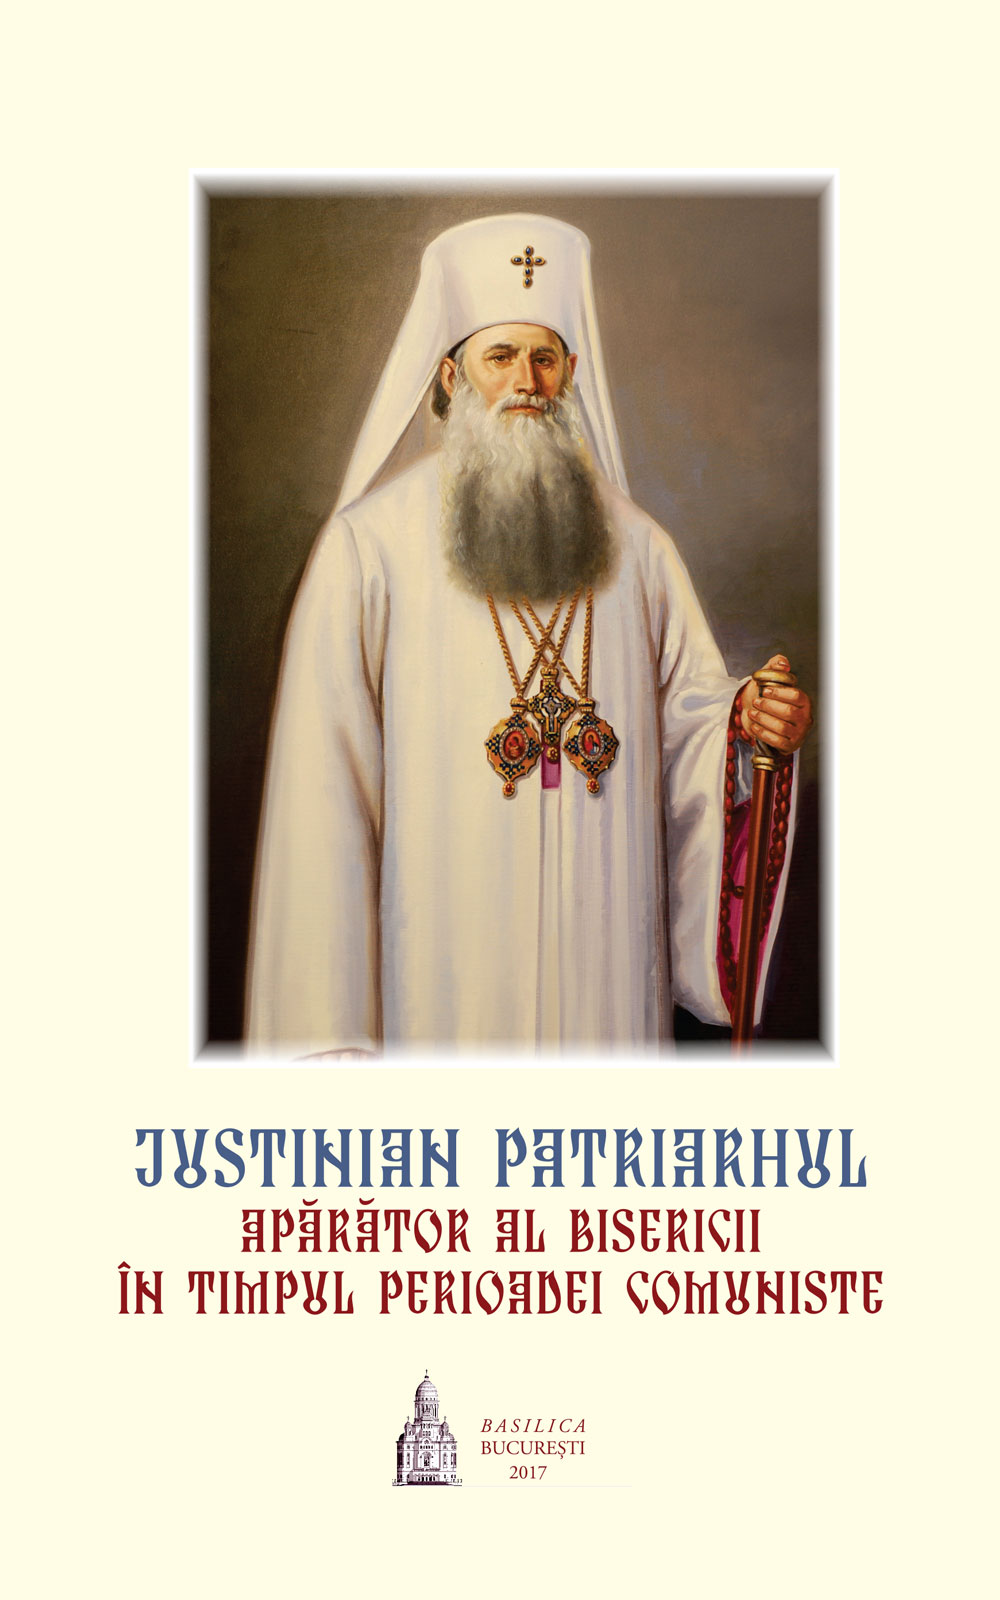 Justinian Patriarhul - Apărător al Bisericii în timpul perioadei comuniste